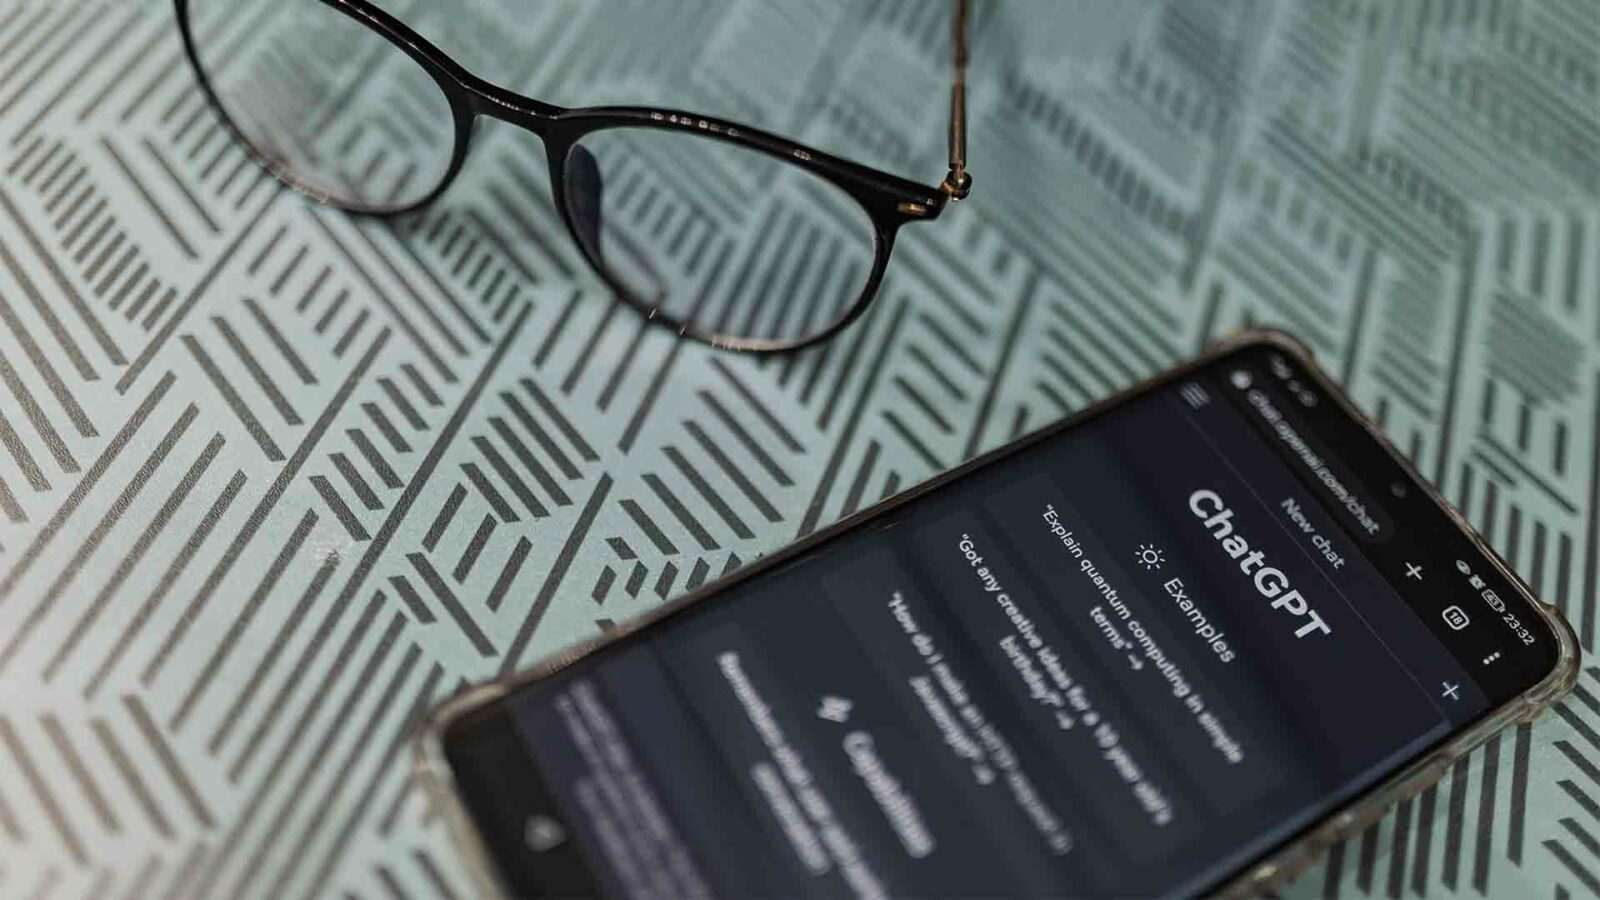 Un smartphone avec l'application chatgpt ouverte repose sur une surface à motifs à côté d'une paire de lunettes, suggérant un scénario de travail ou d'étude.